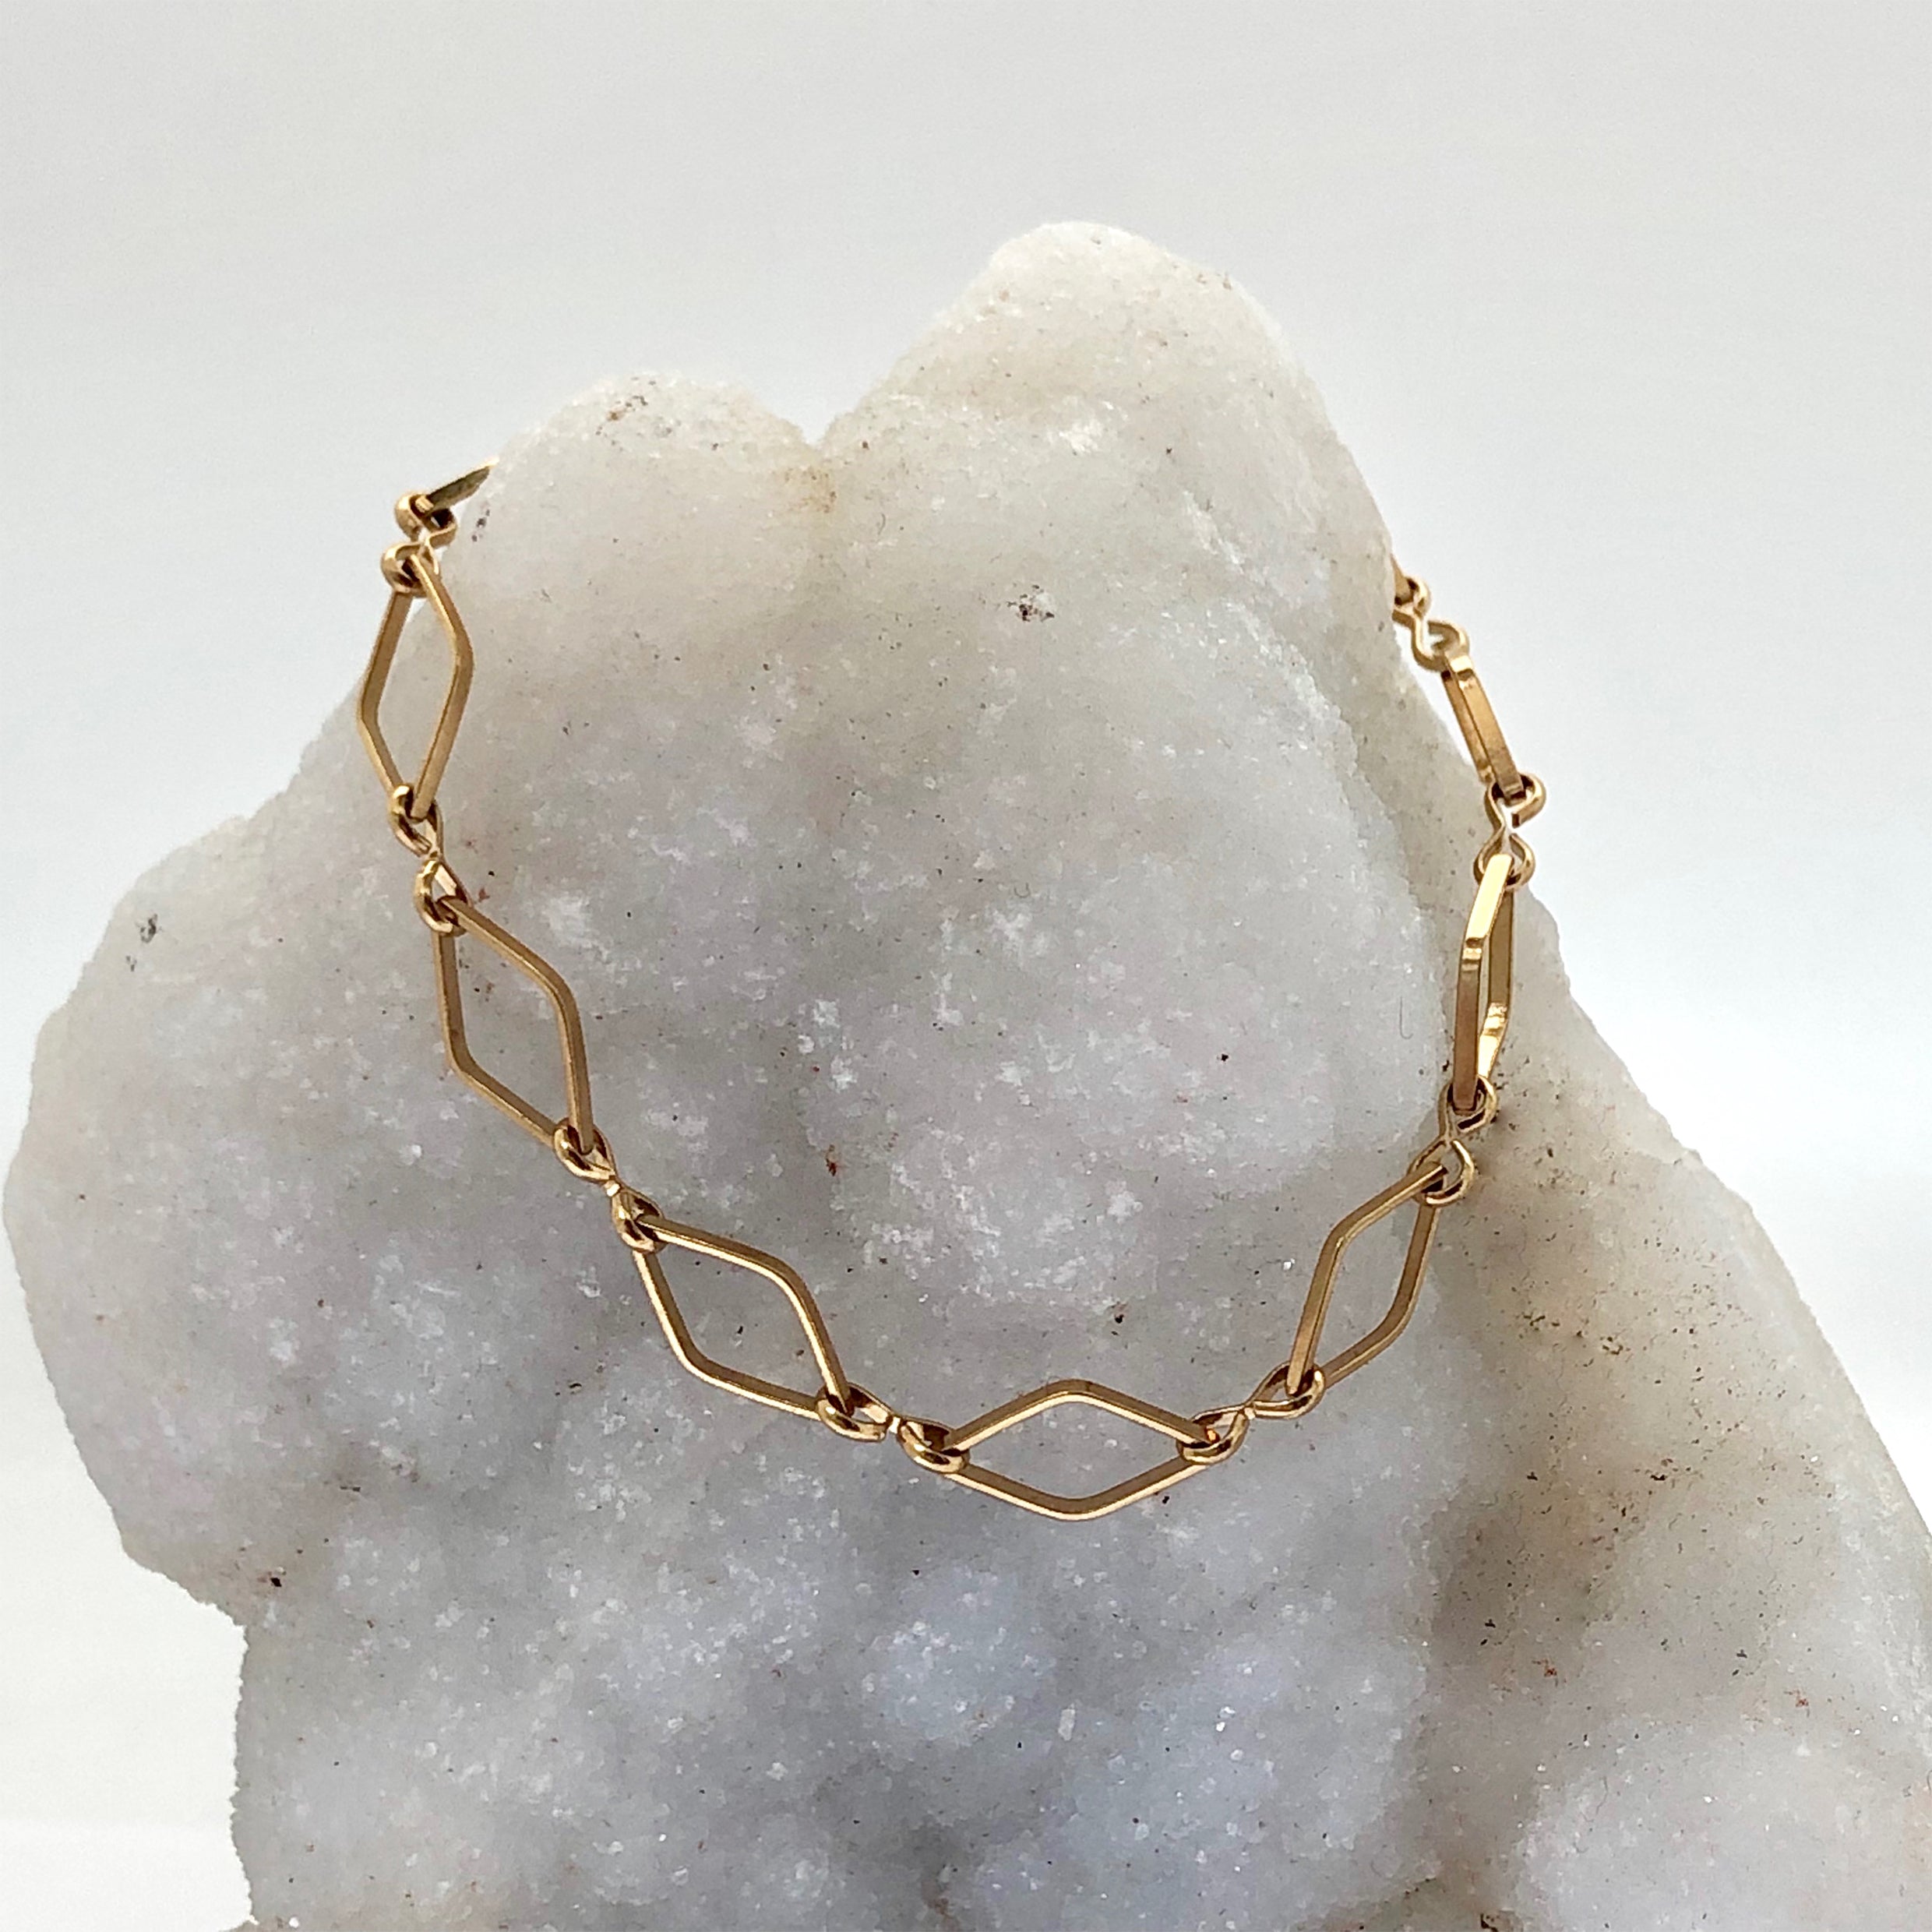 Losange Chain Bracelet - Mirabelle Jewellery